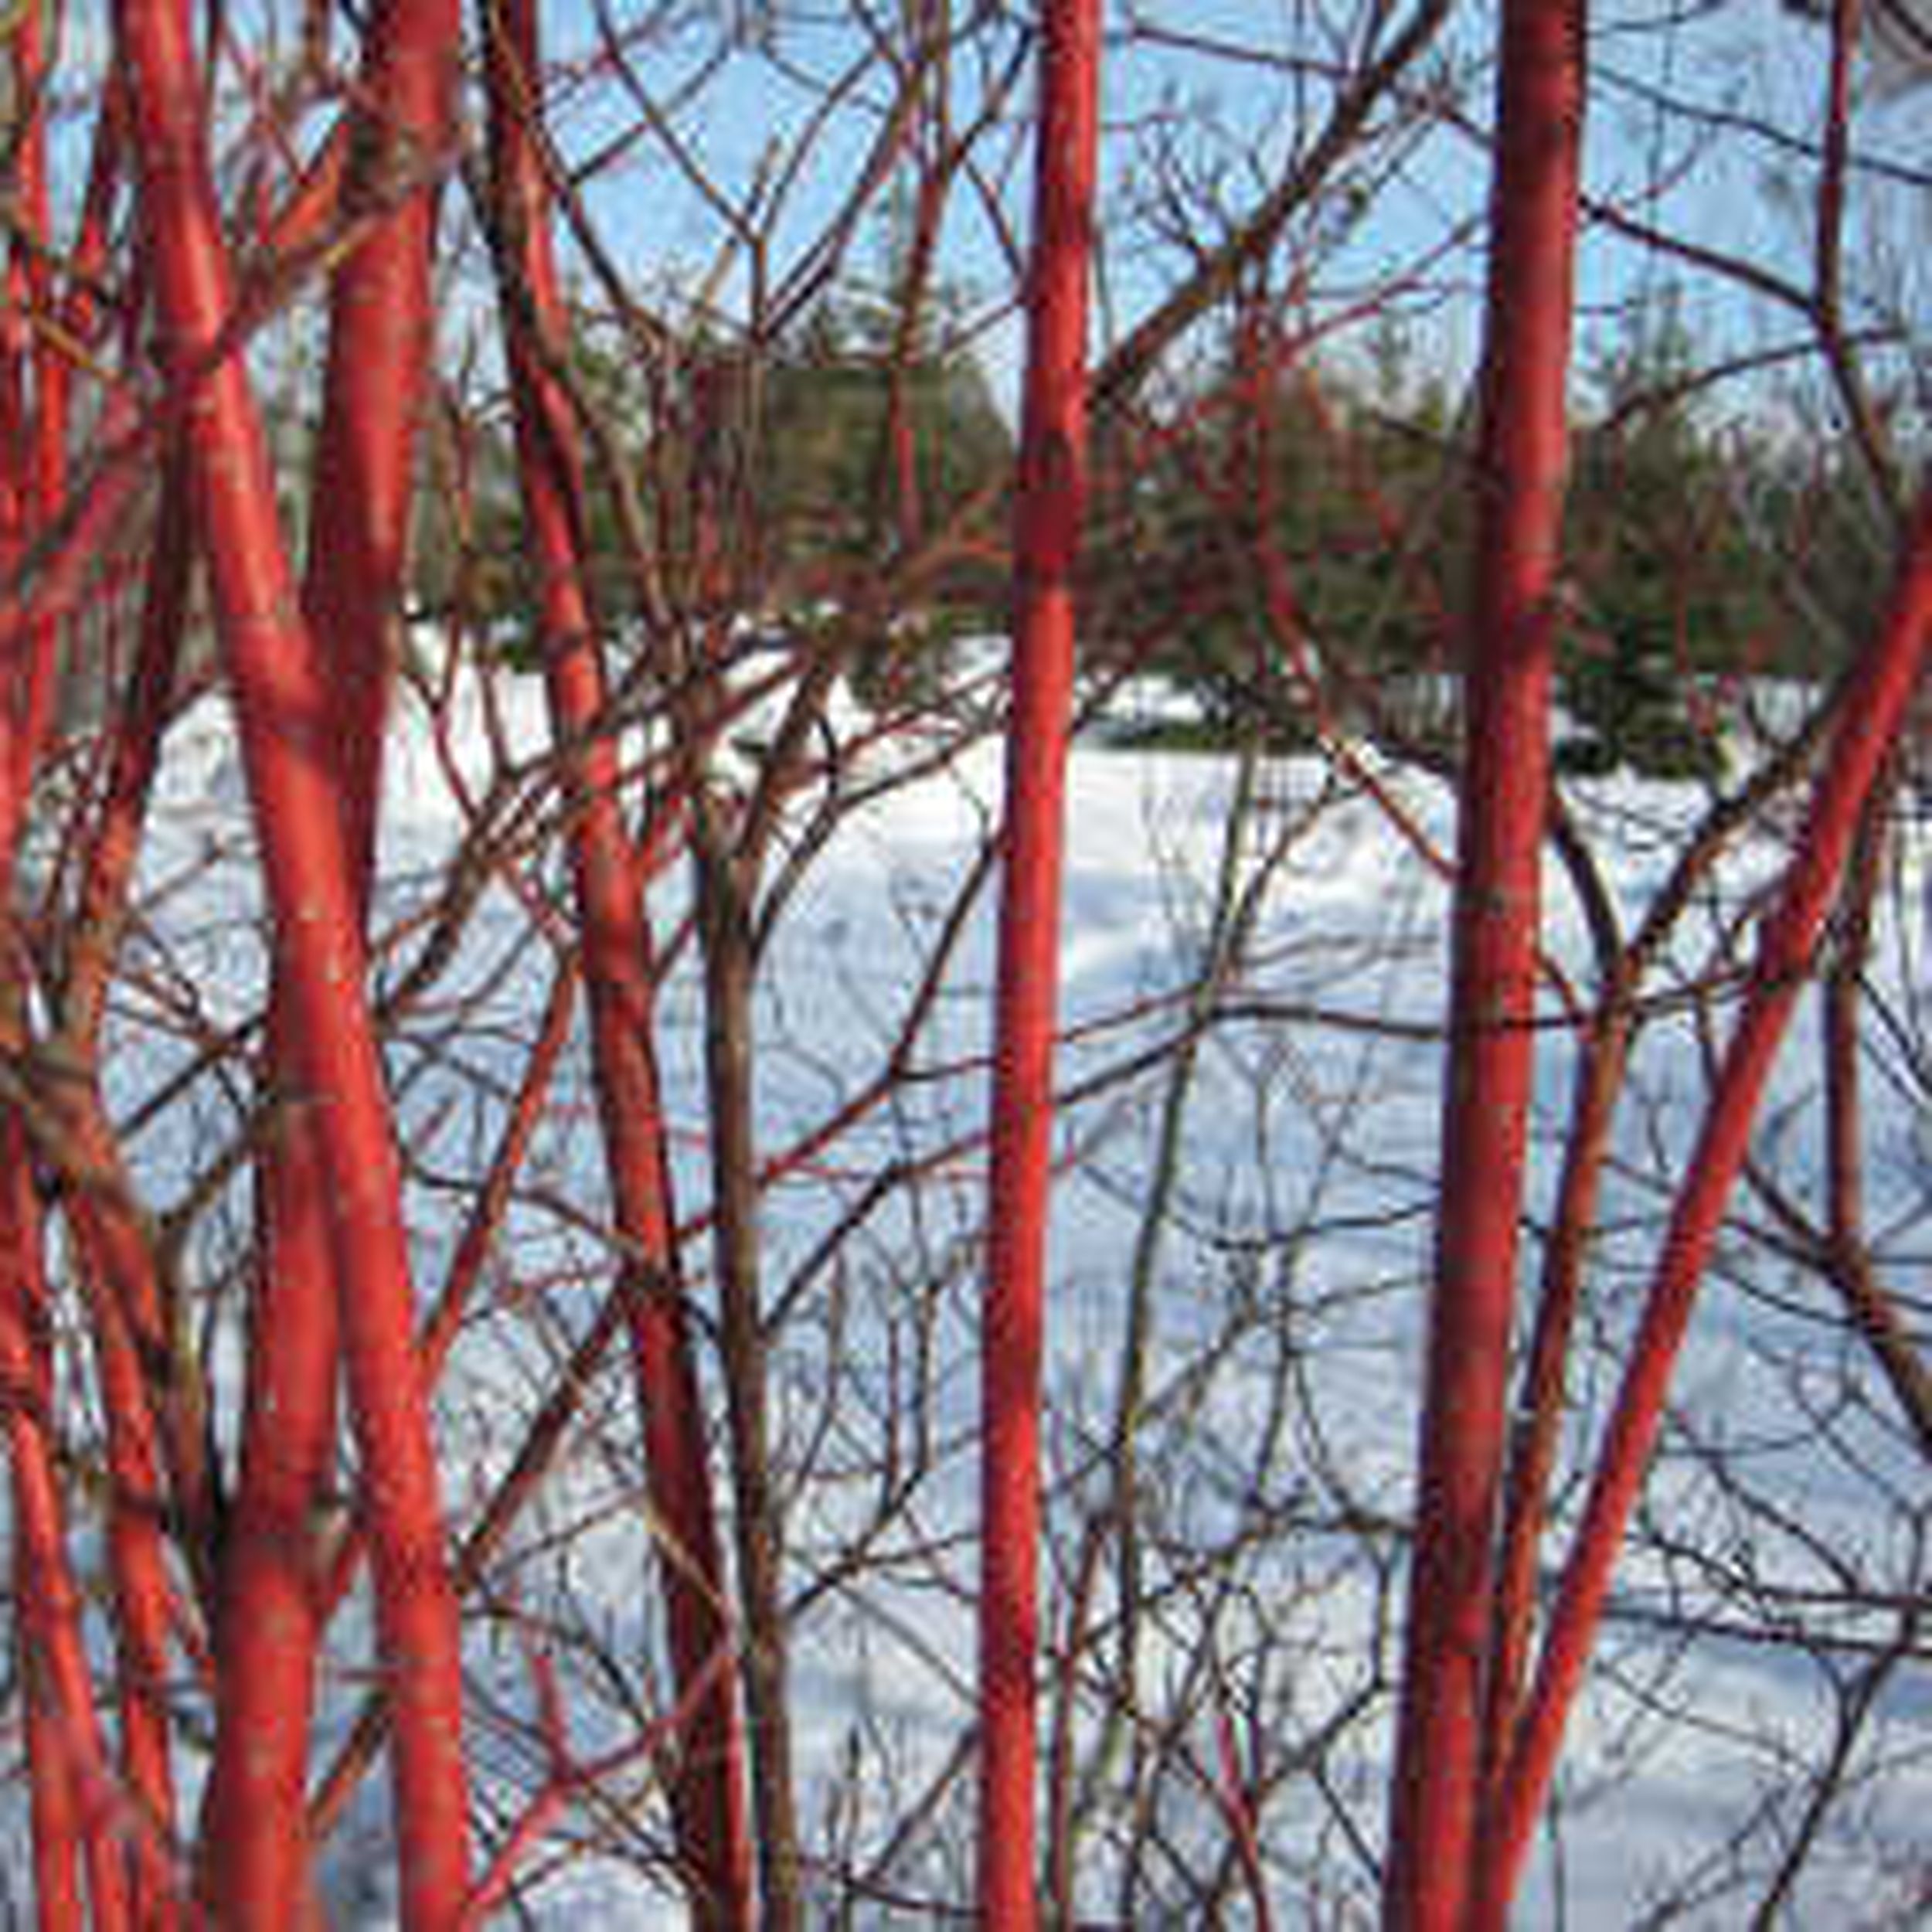 dogwood tree in winter